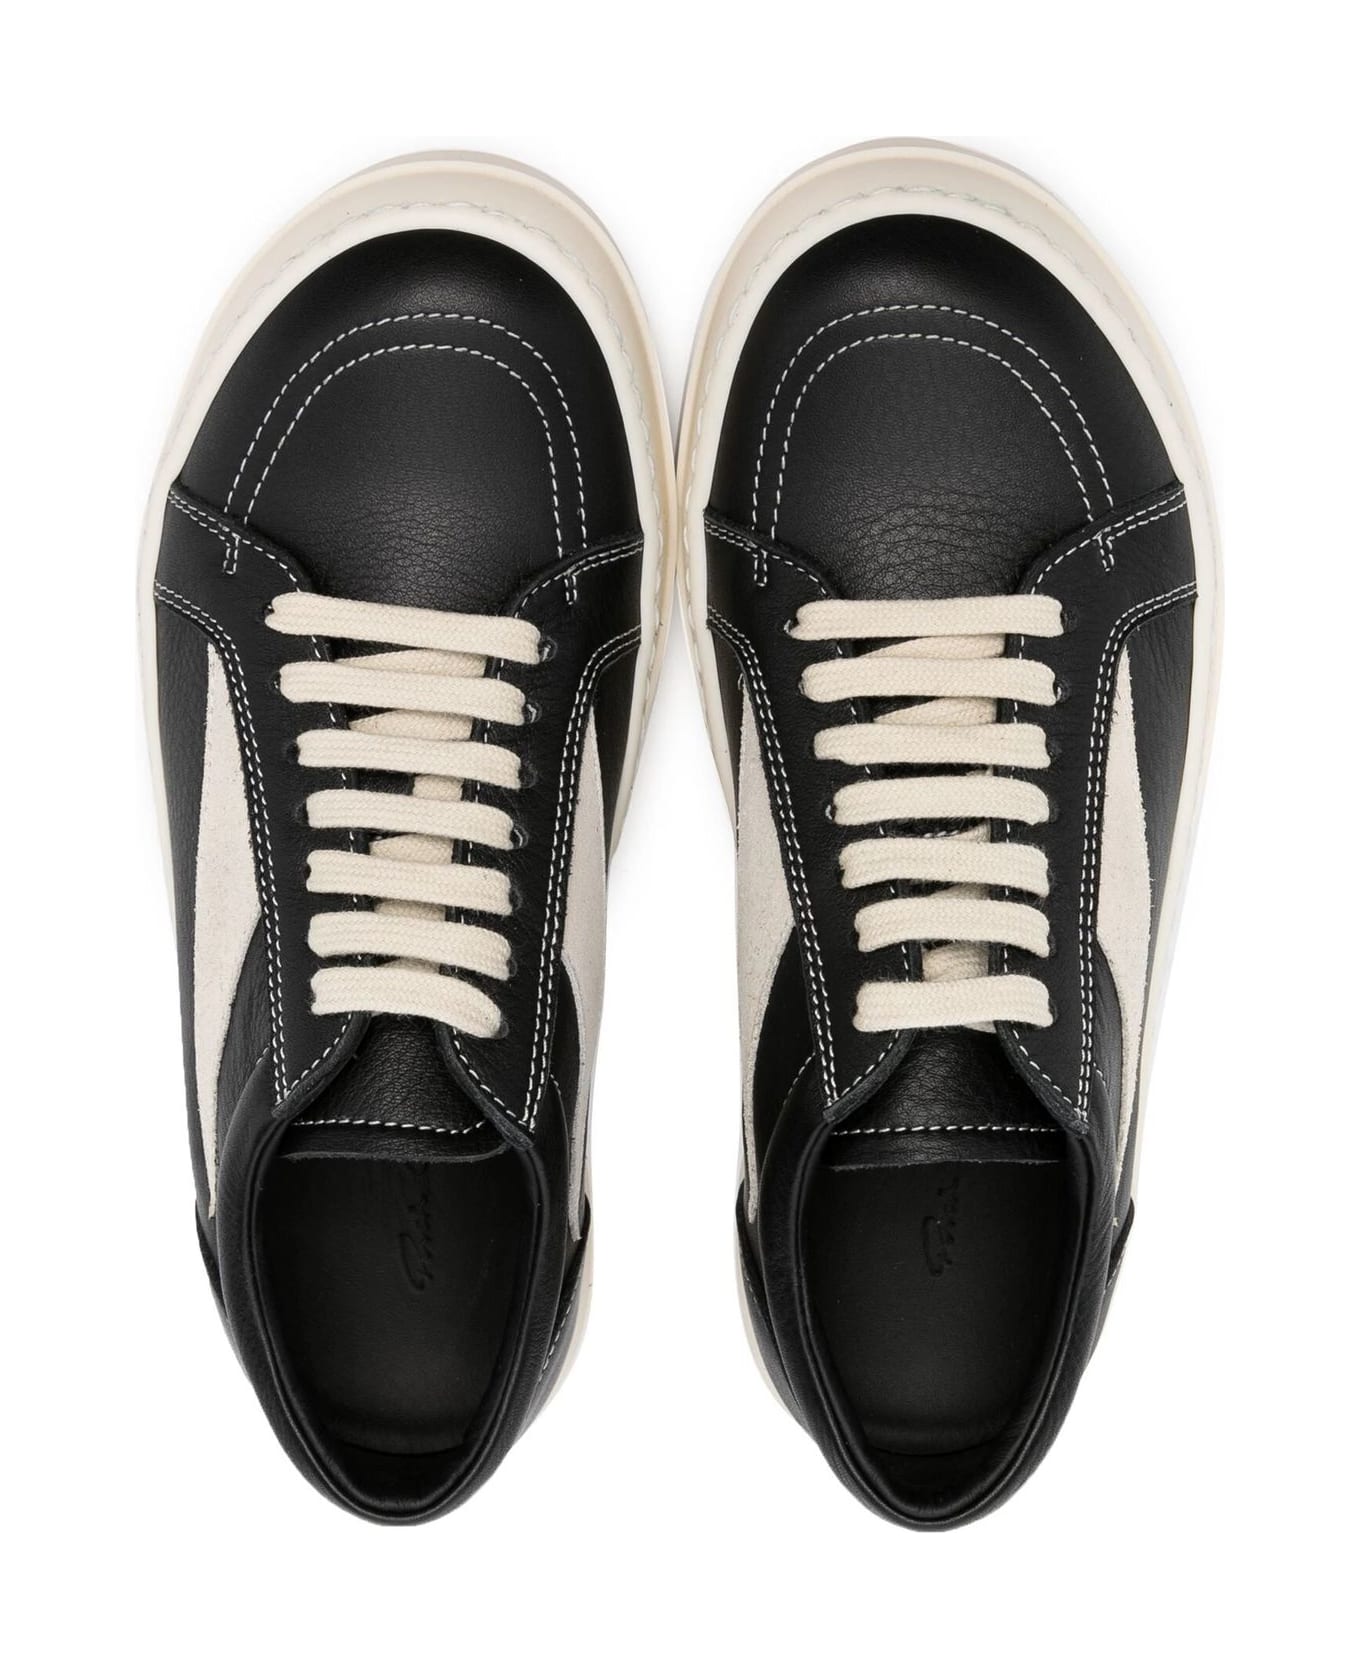 Rick Owens Sneakers Black - Black